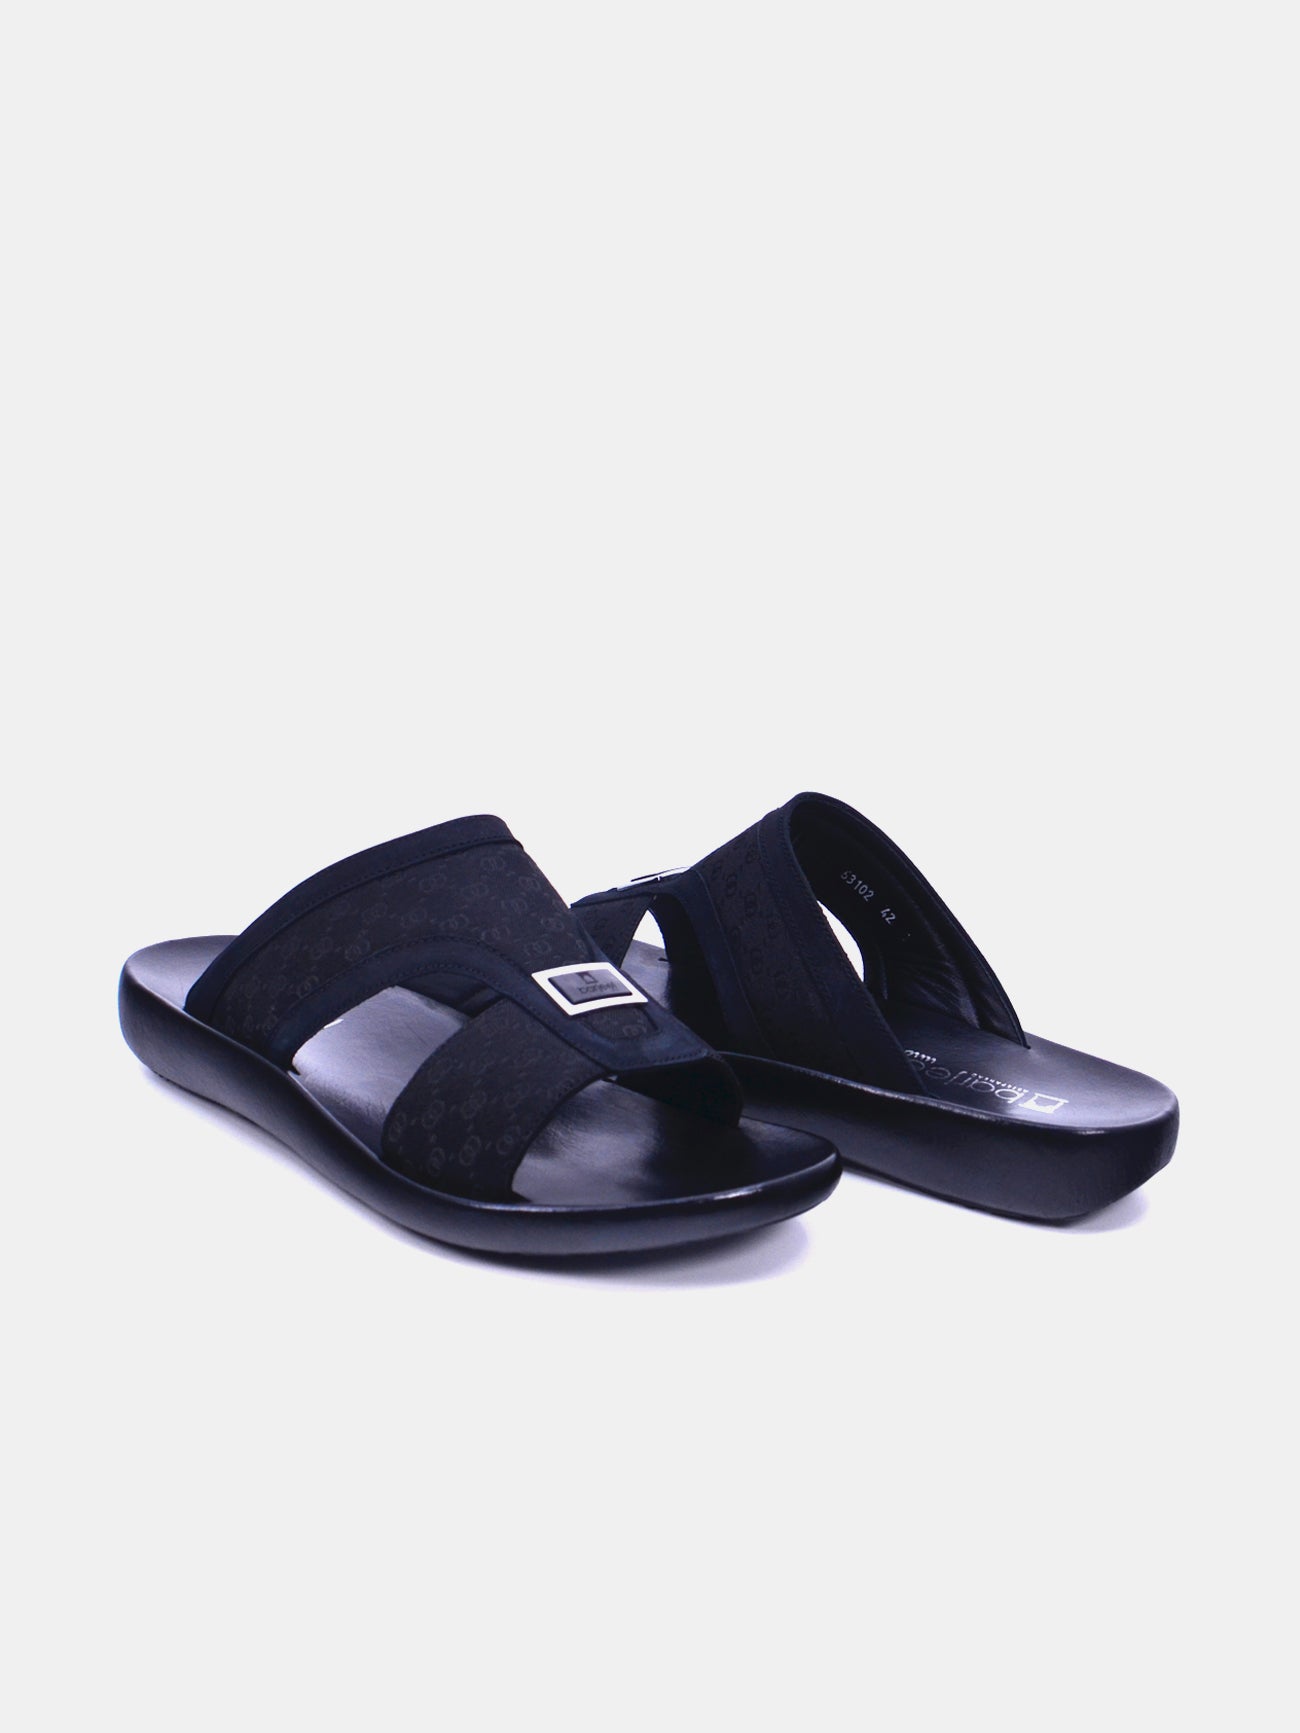 Barjeel Uno 63102 Boys Sandals #color_Black